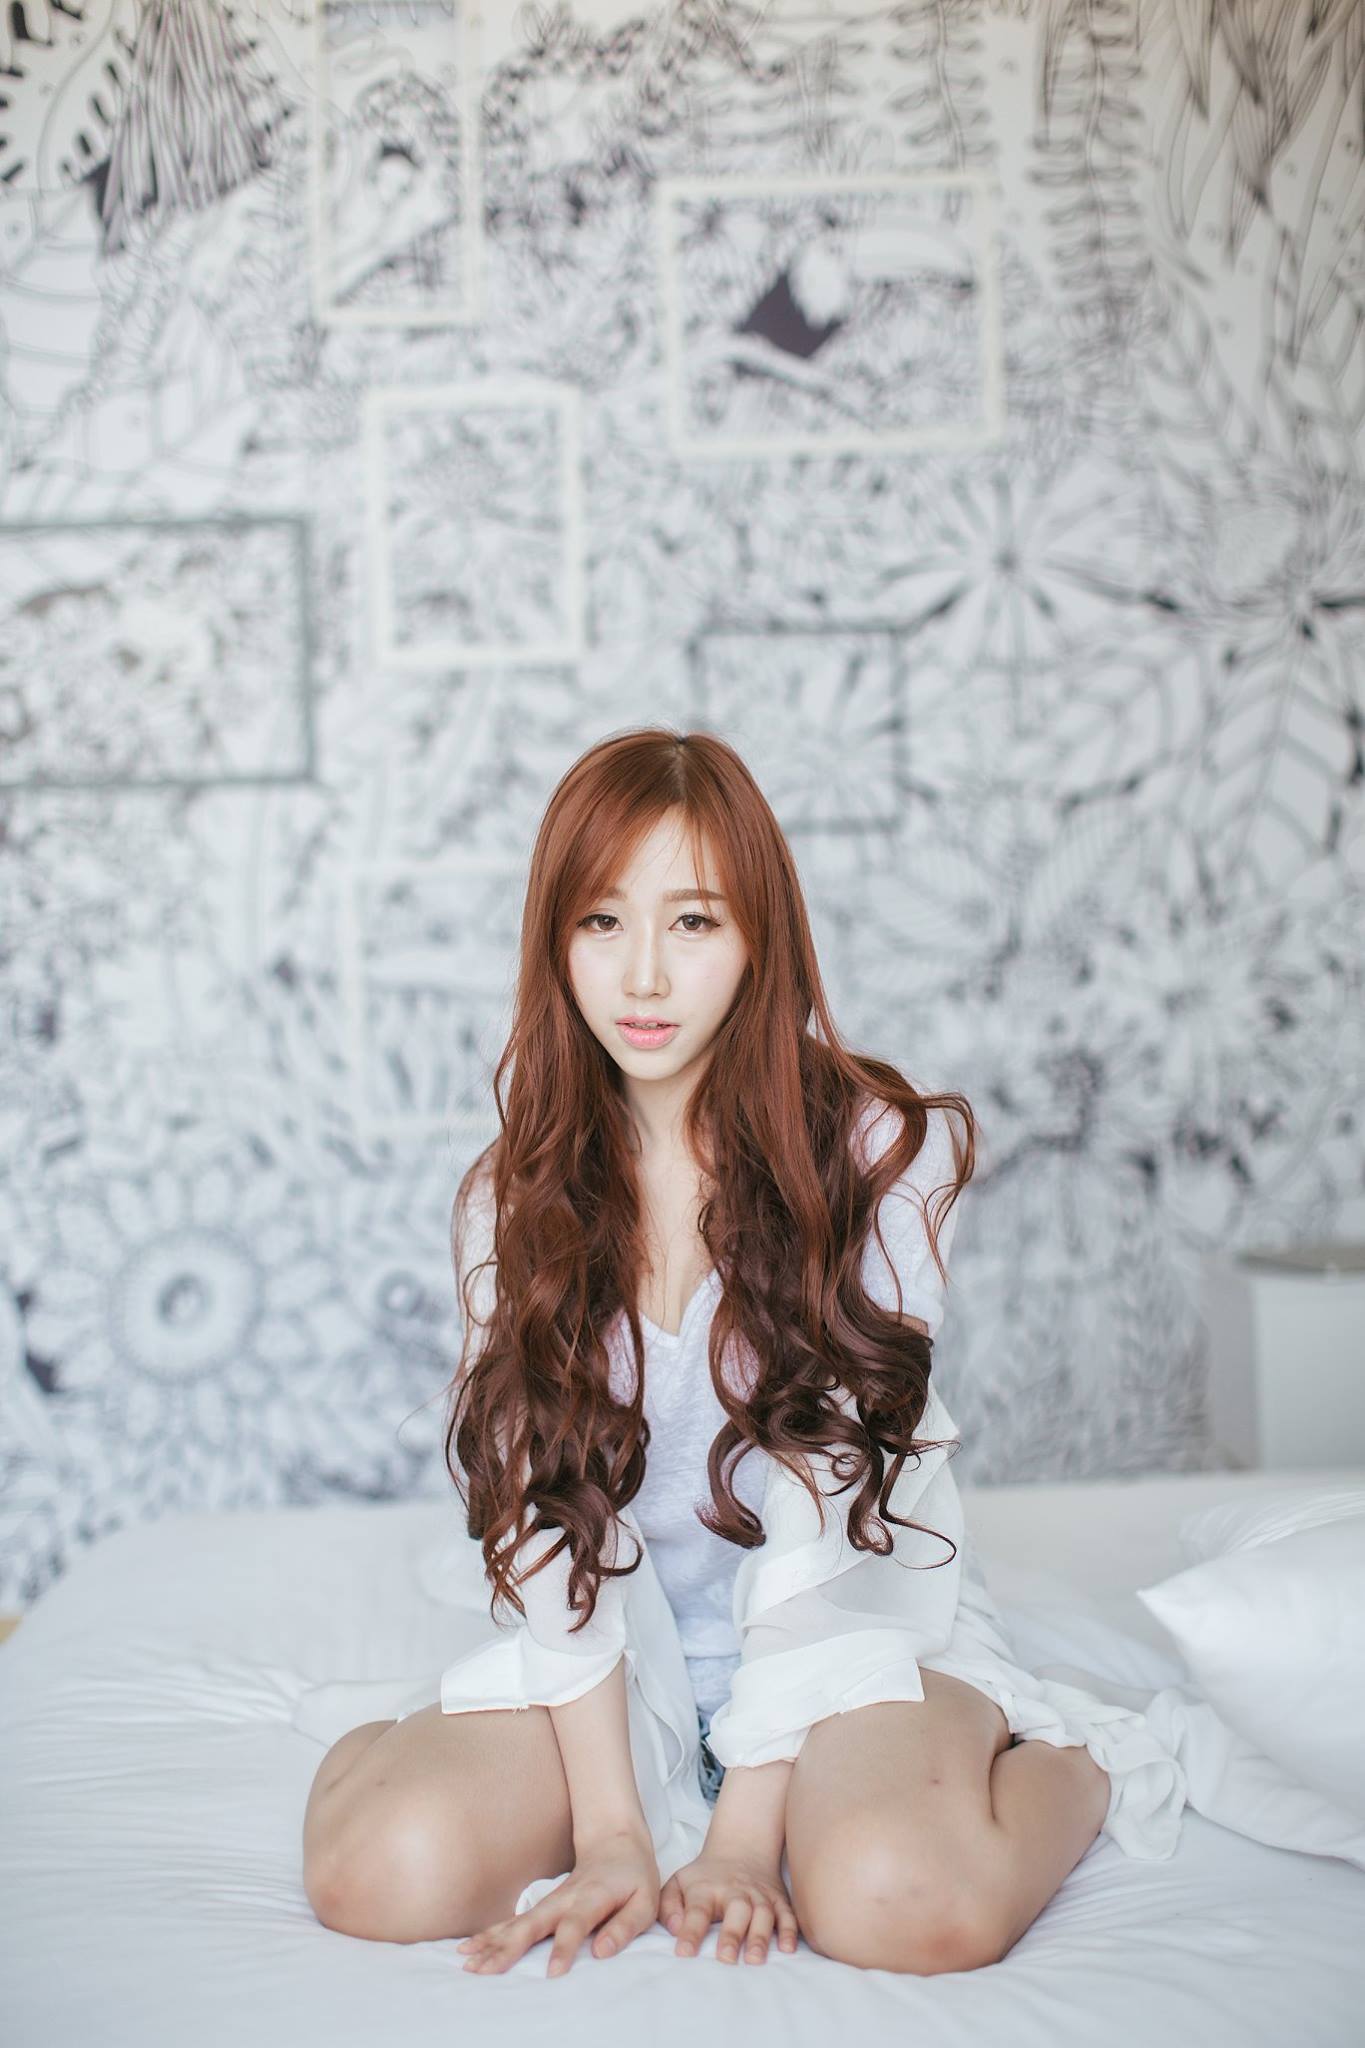 #soft-mode ห้องนอนสีขาวกับสาวน่ารัก(ขาวเหมือนห้องแหละ)